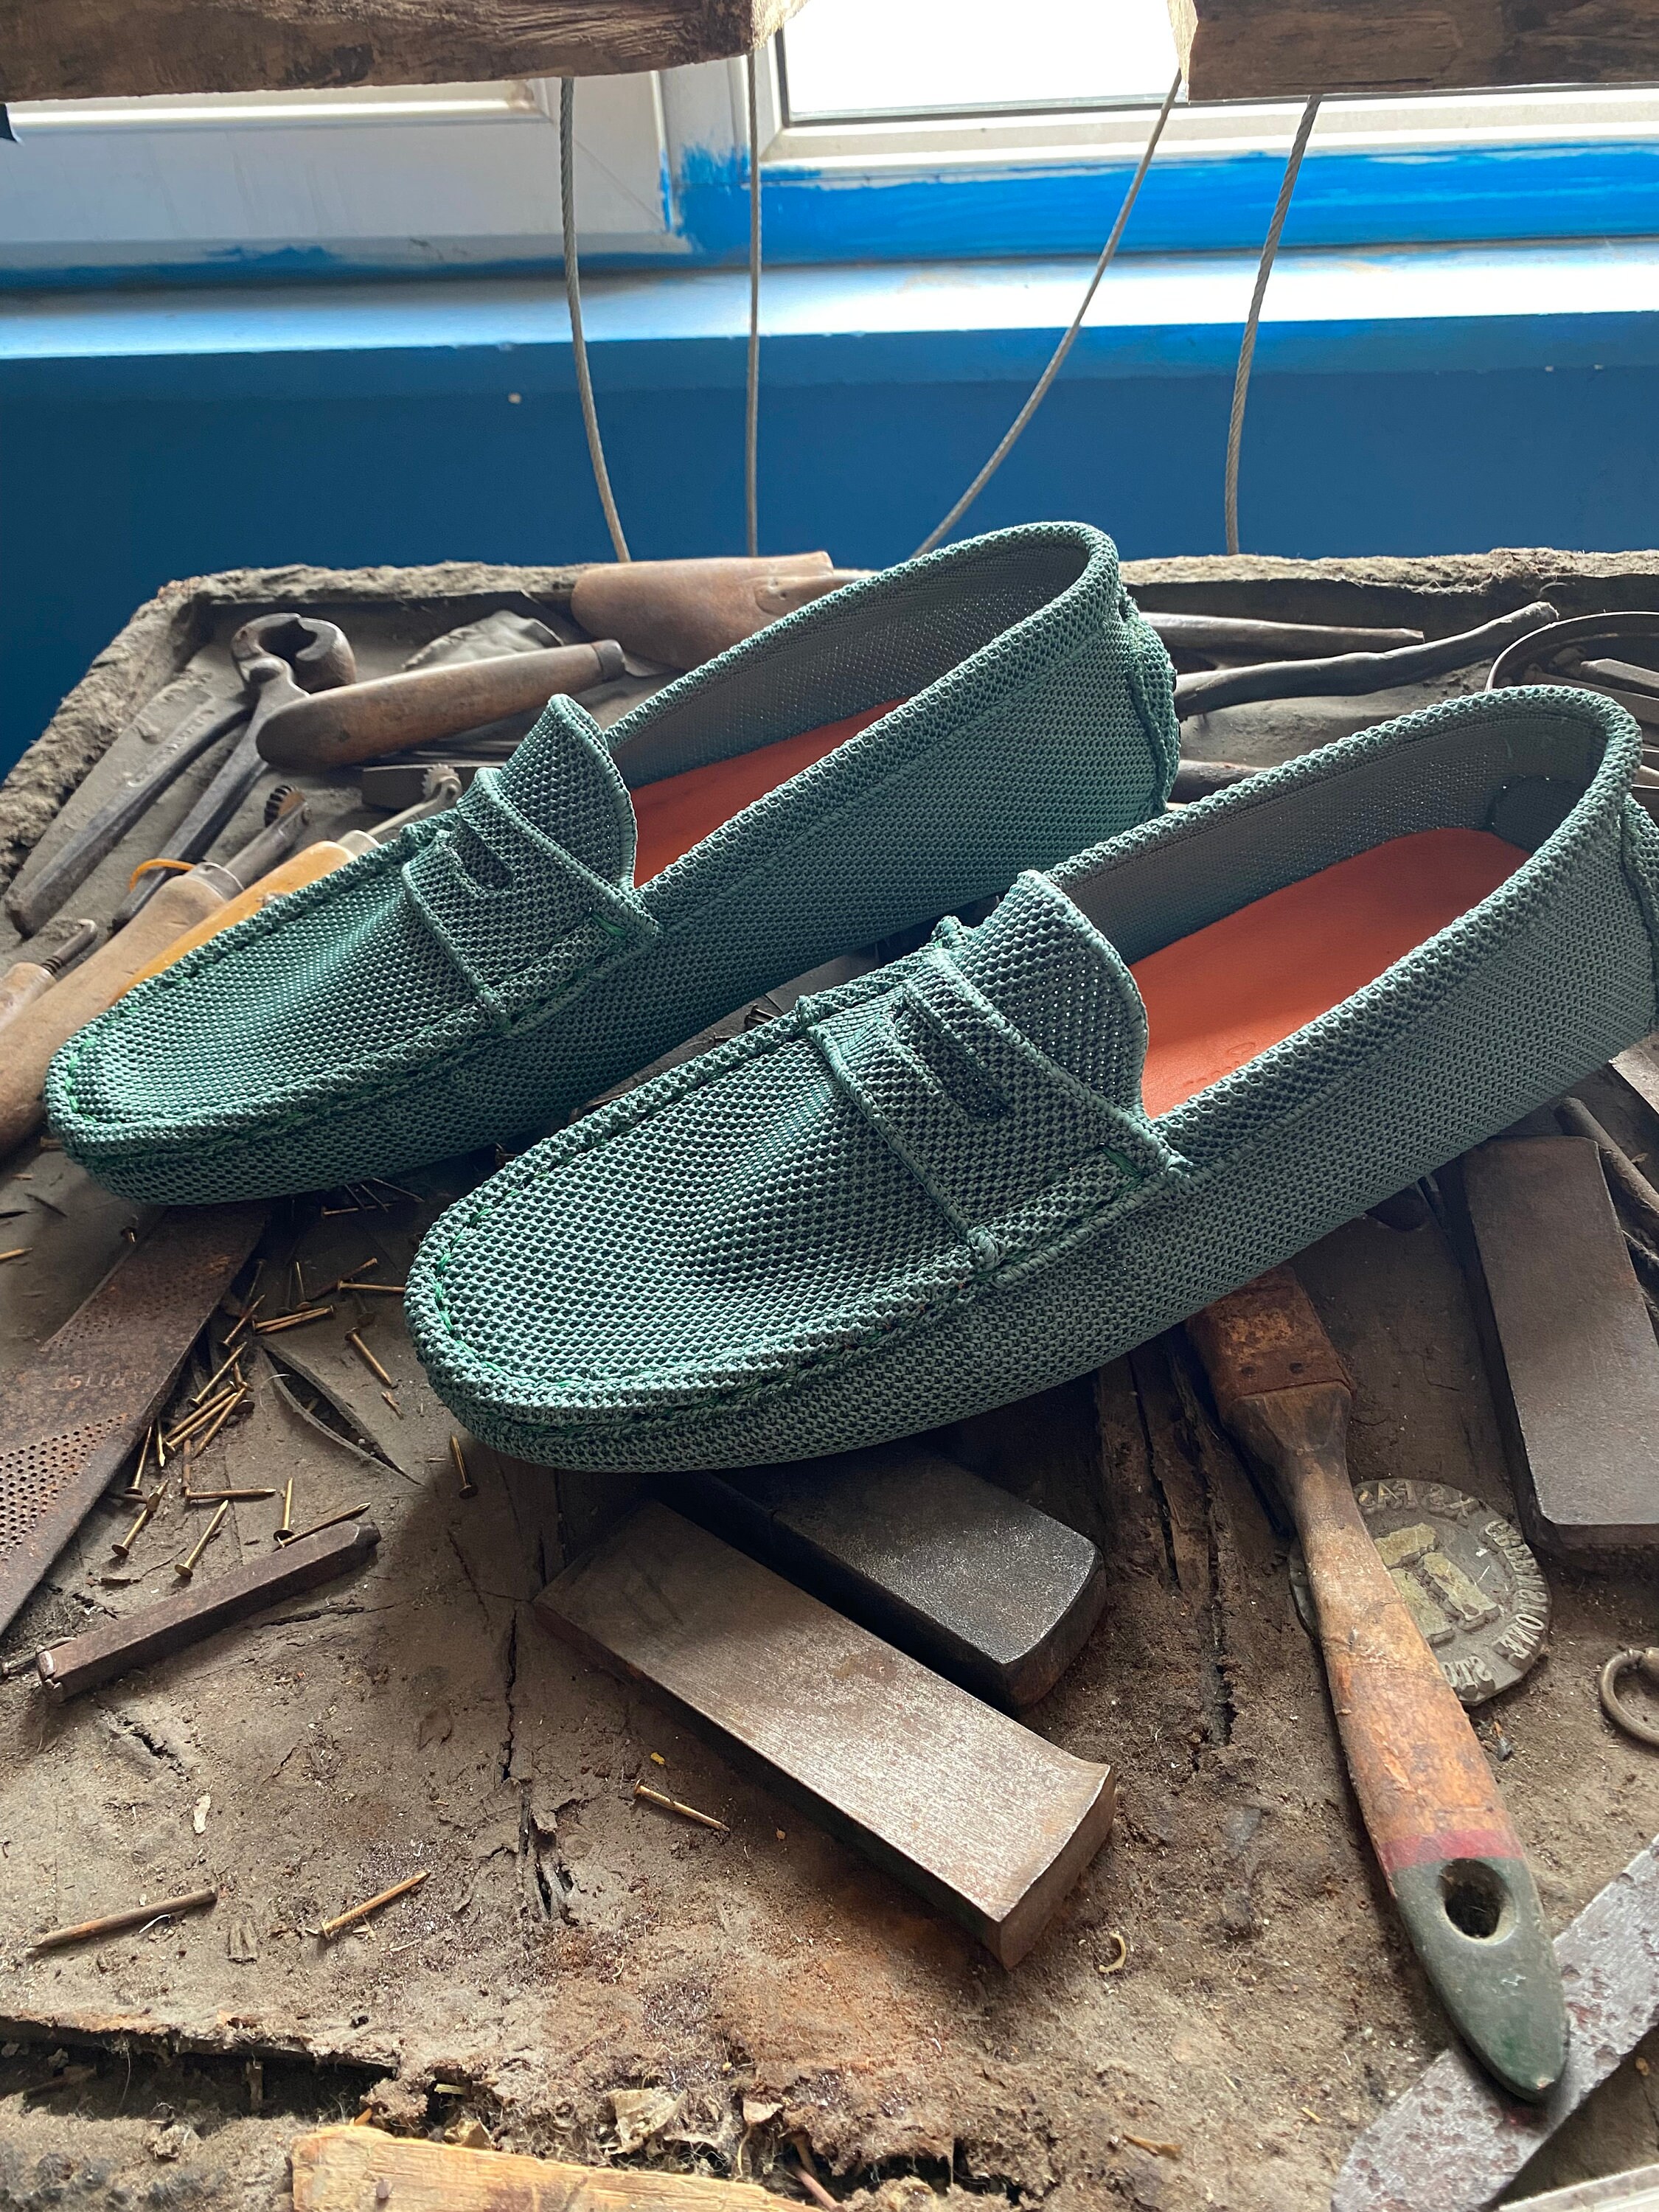 Major Loafer Luxury - Ramadan Gift Idea - Shoes, Men